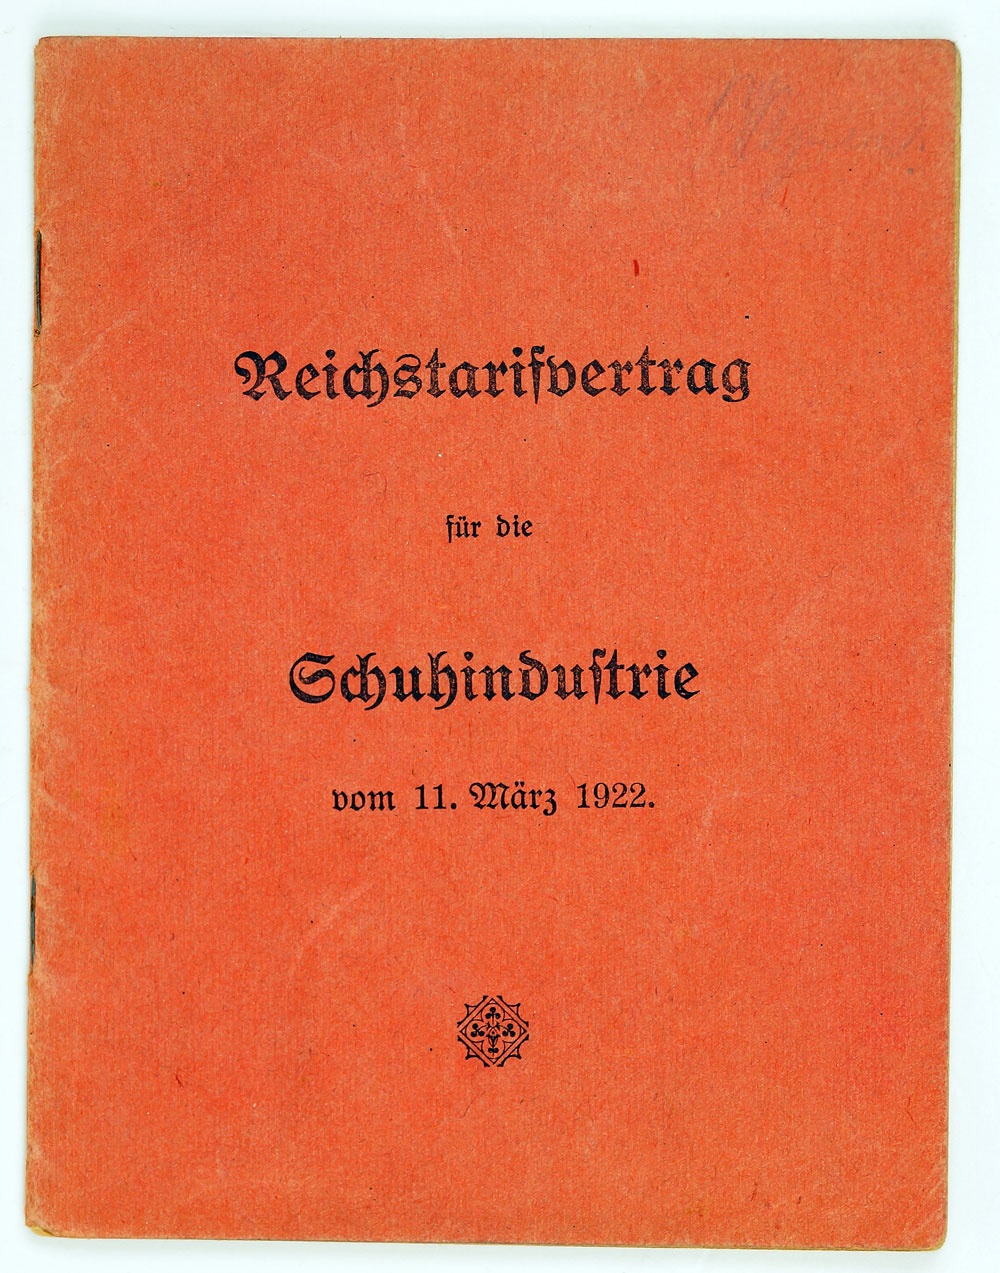 Gedruckte Ausgabe des Reichstarifvertrages für die Schuhindustrie, 1922 (Museum Weißenfels - Schloss Neu-Augustusburg CC BY-NC-SA)